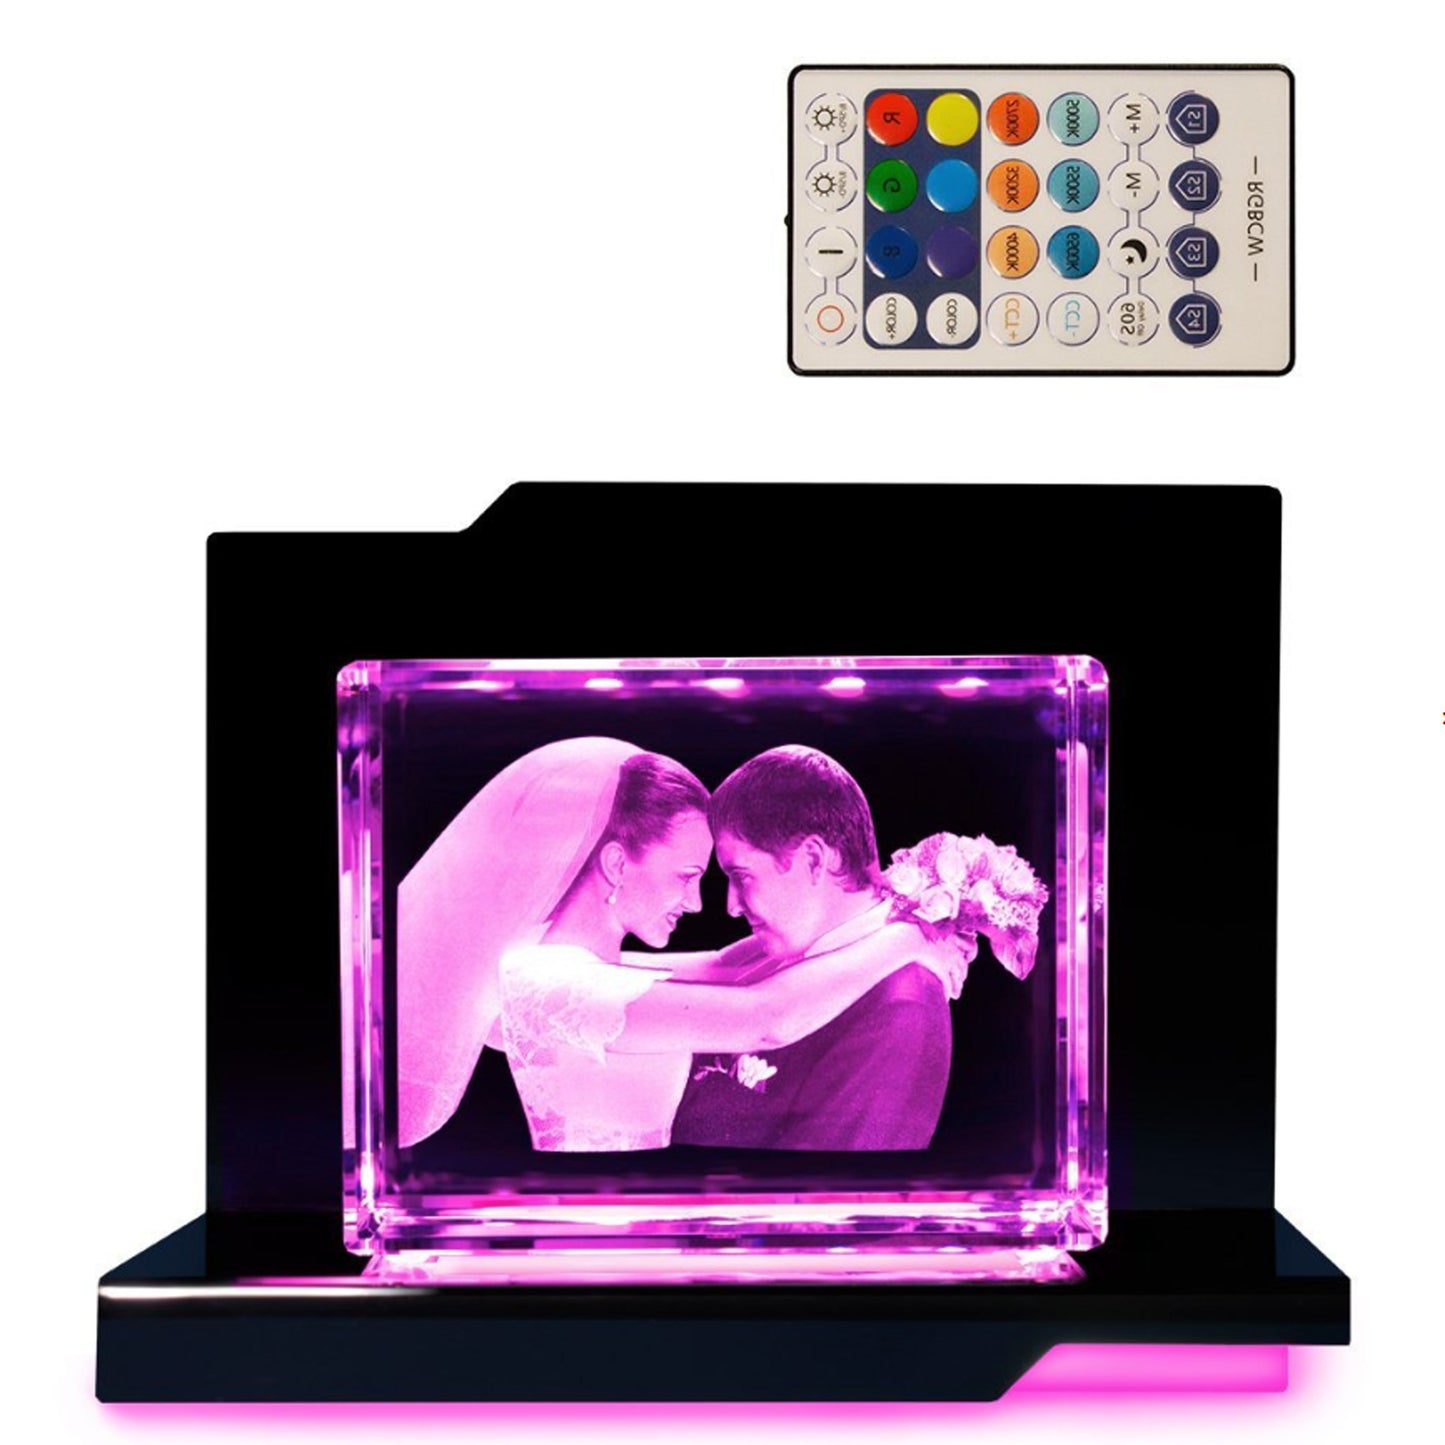 3D Fotos in Glas - Giga Querformat mit Adagio Beleuchtungselement